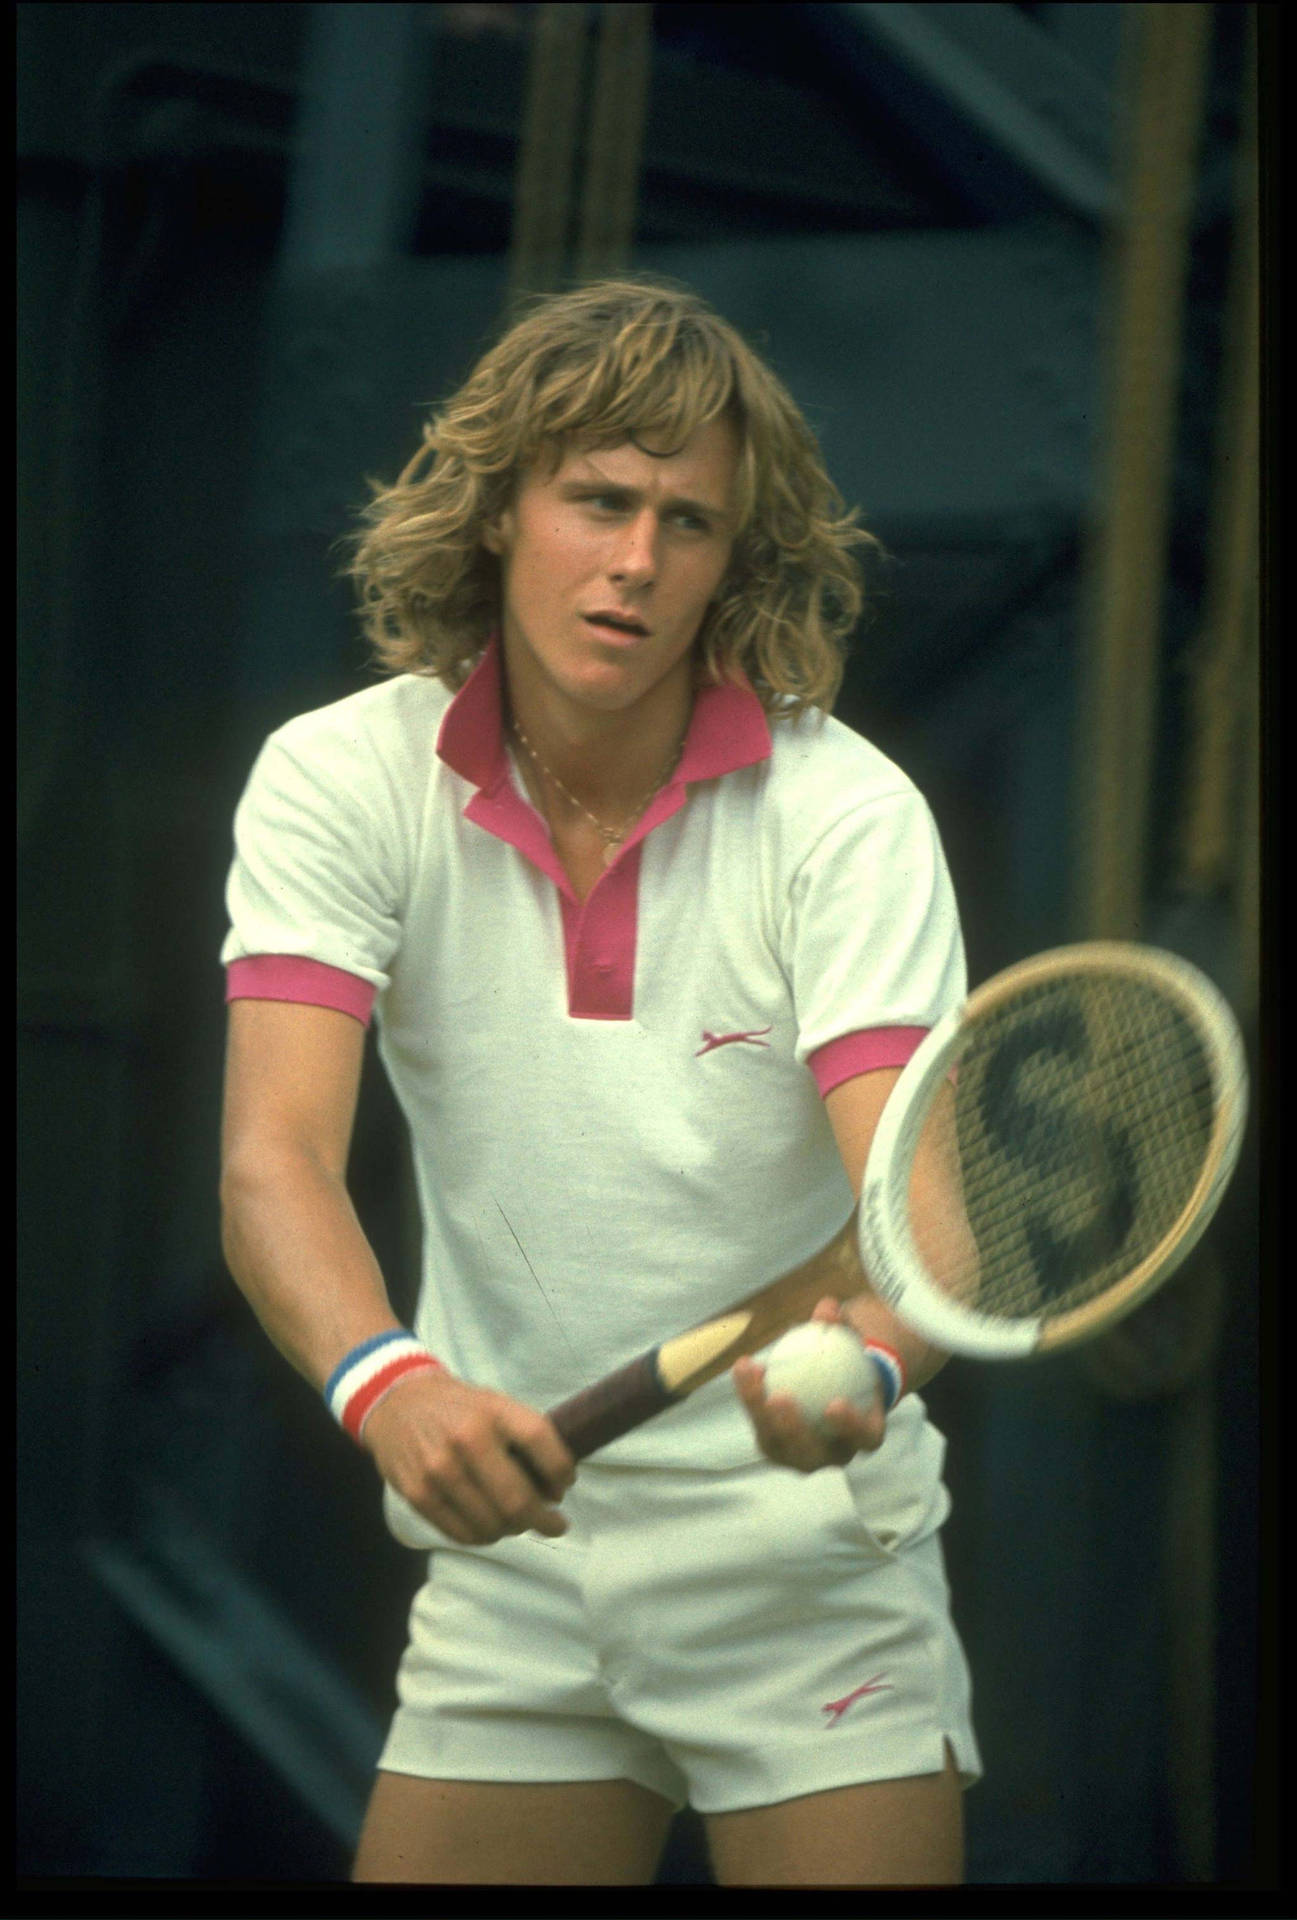 1974campeonato De Tenis De Wimbledon Björn Borg Fondo de pantalla